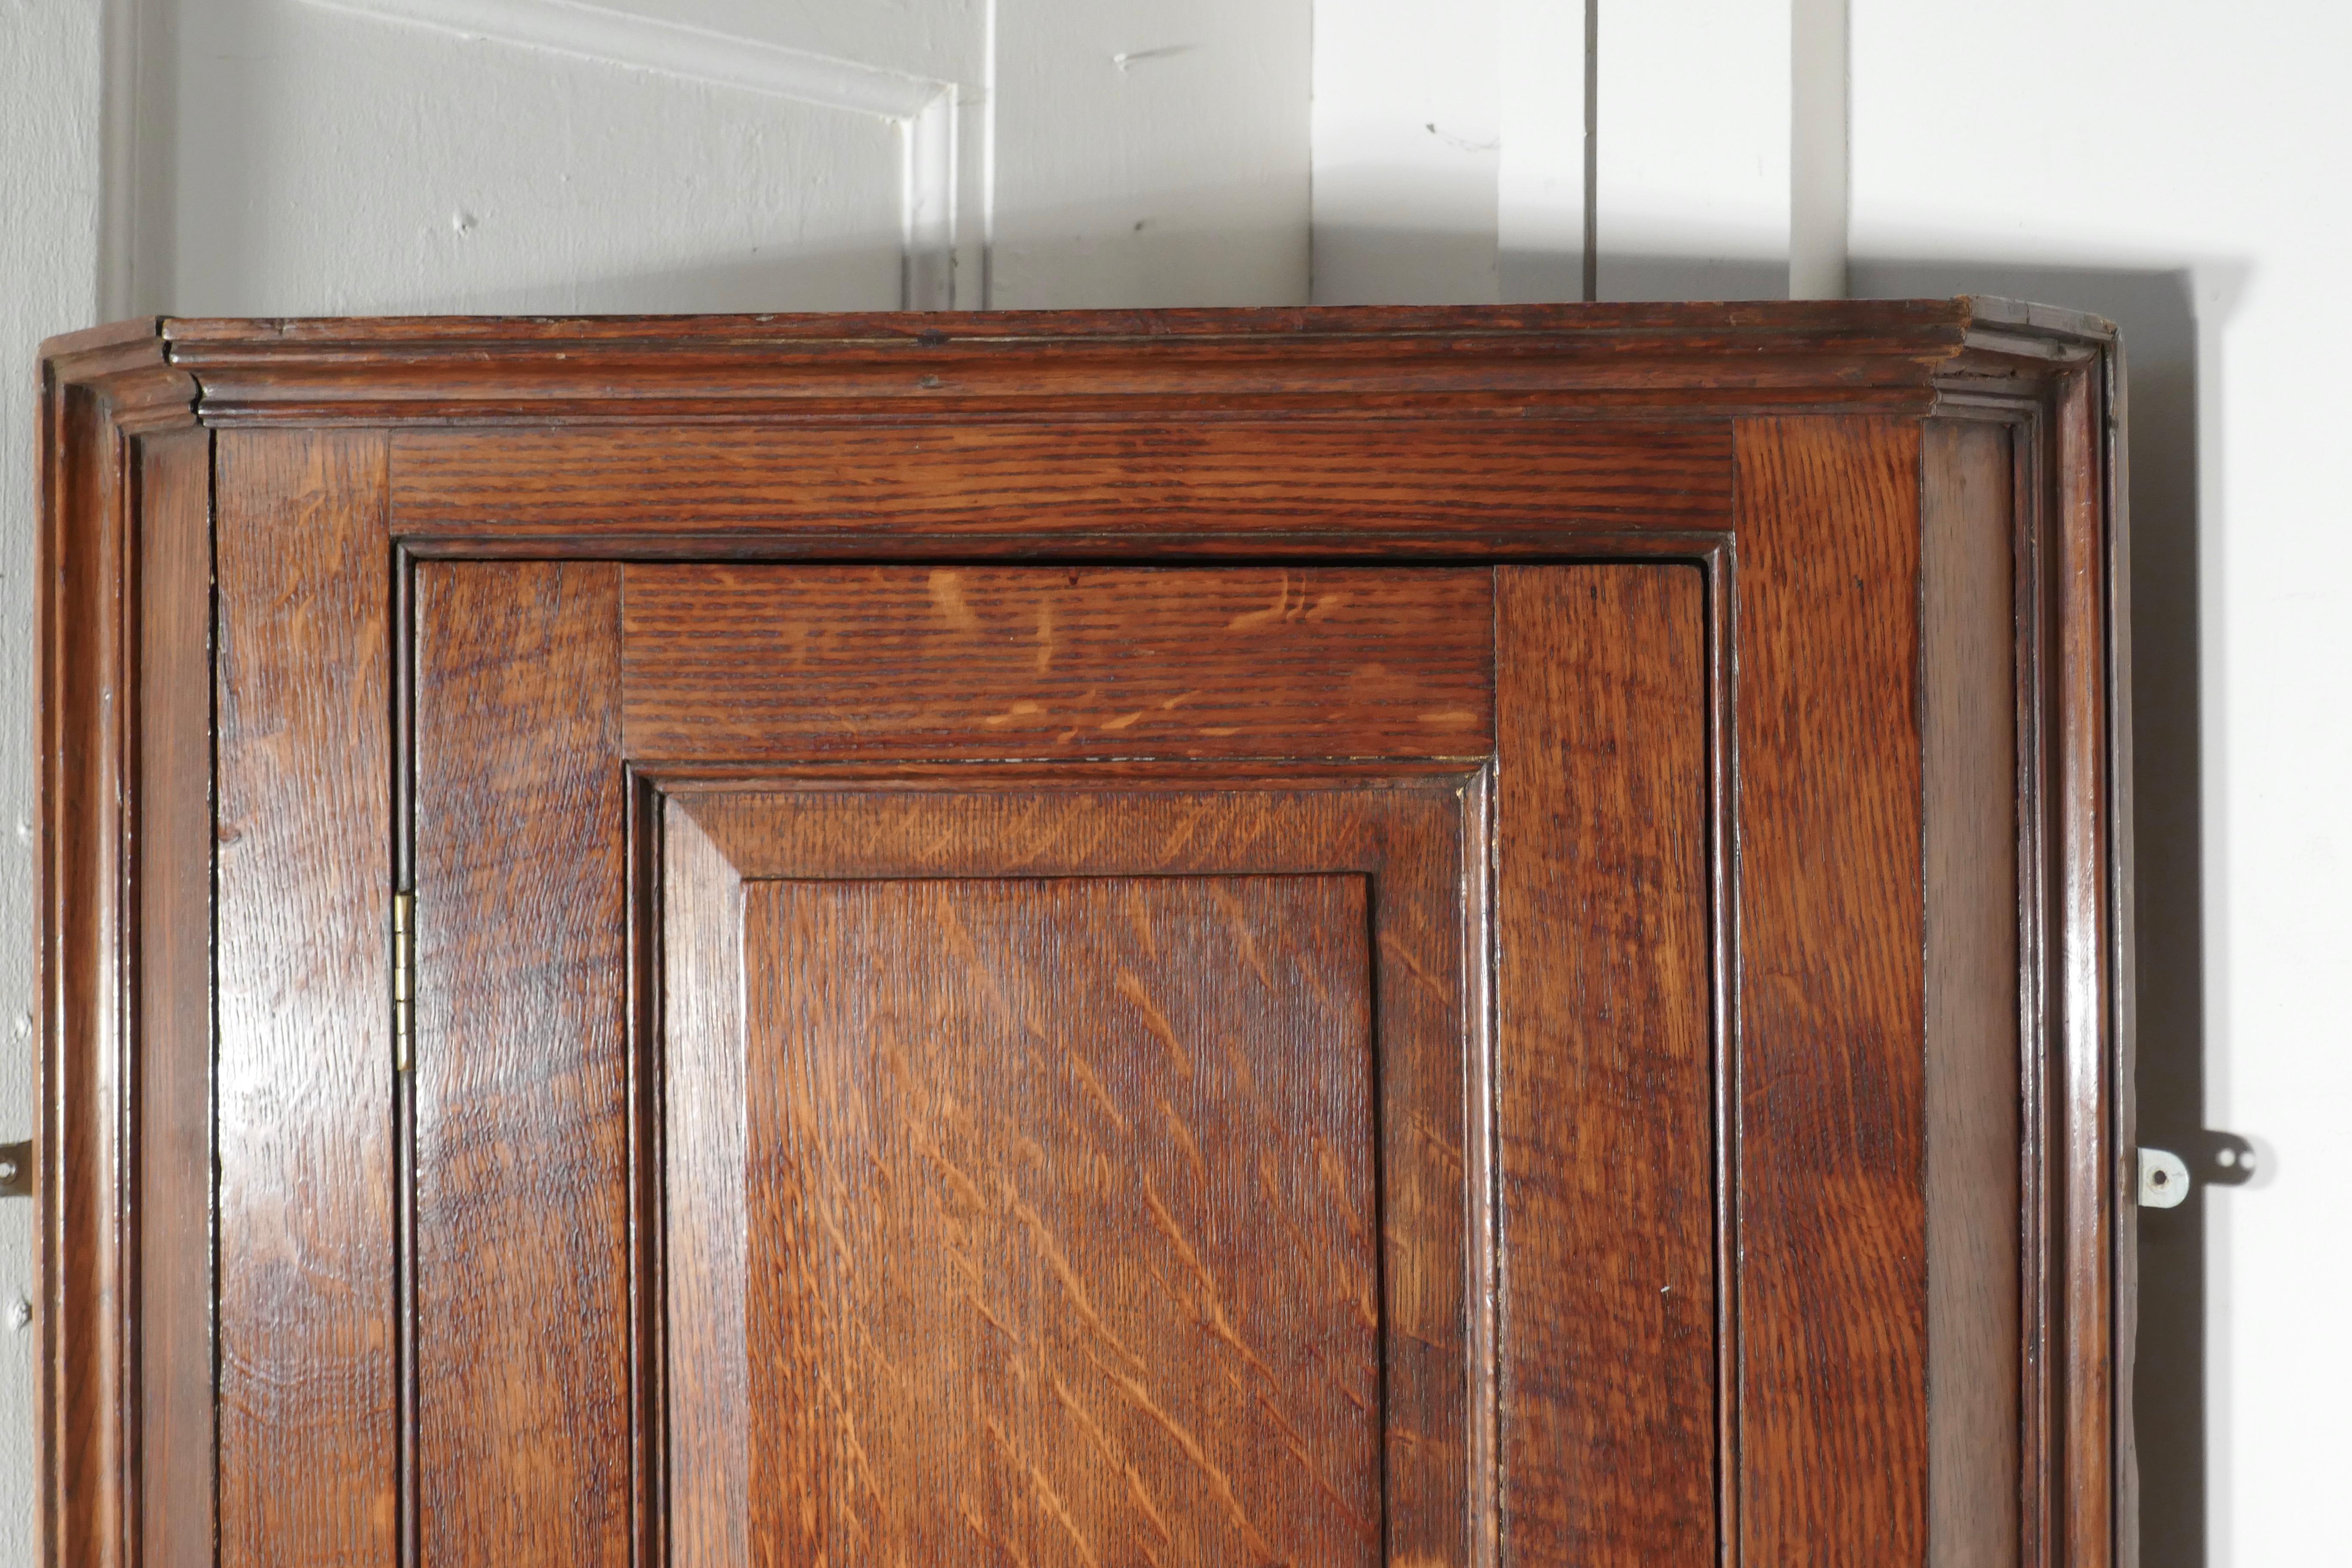 Armoire d'angle en chêne du XVIIIe siècle

Armoire d'angle du 18ème siècle en chêne du pays, l'armoire a un panneau à champ classique sur la porte qui contient 3 étagères d'angle en forme.
L'armoire est livrée avec la serrure et la clé d'origine